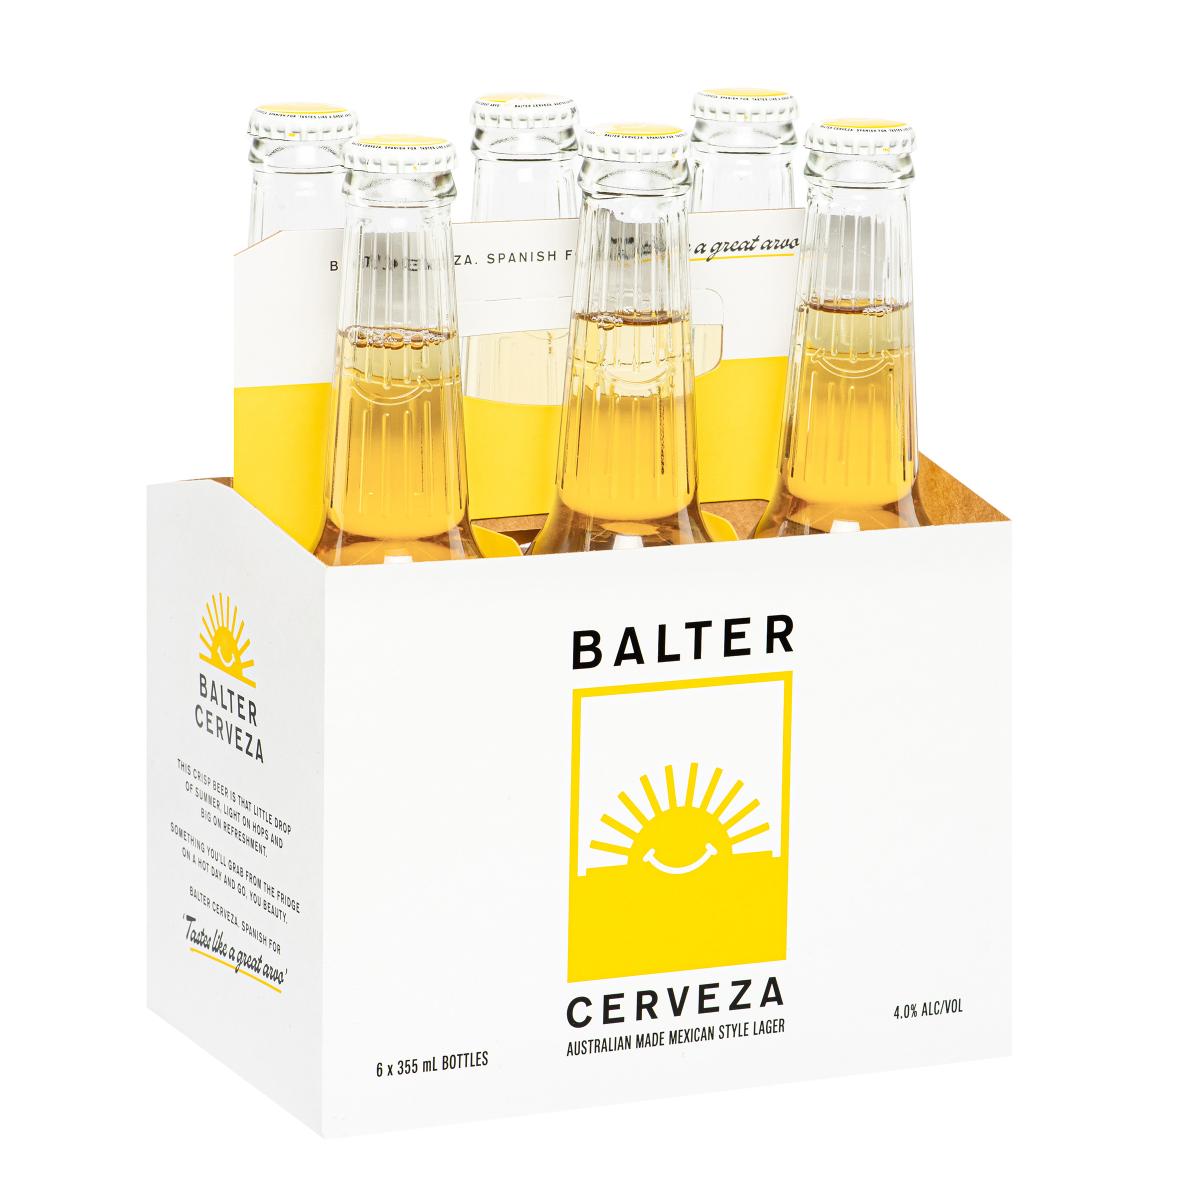 Balter Cerveza Bottle 6 Pack | Buy Online Porters Liquor